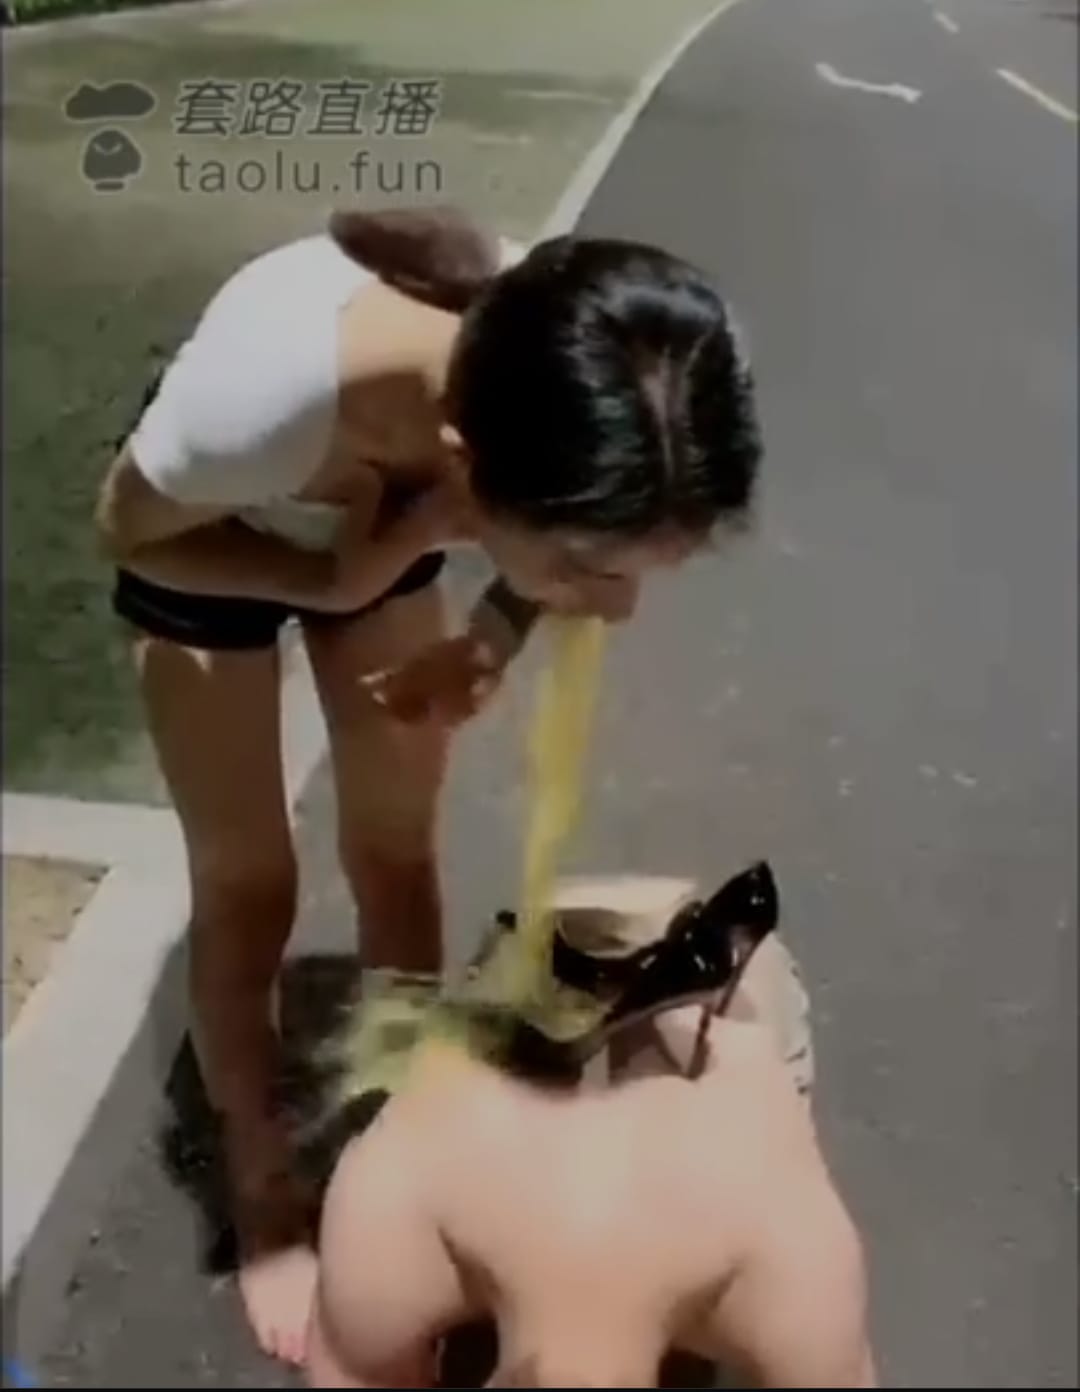 man being vomited in public